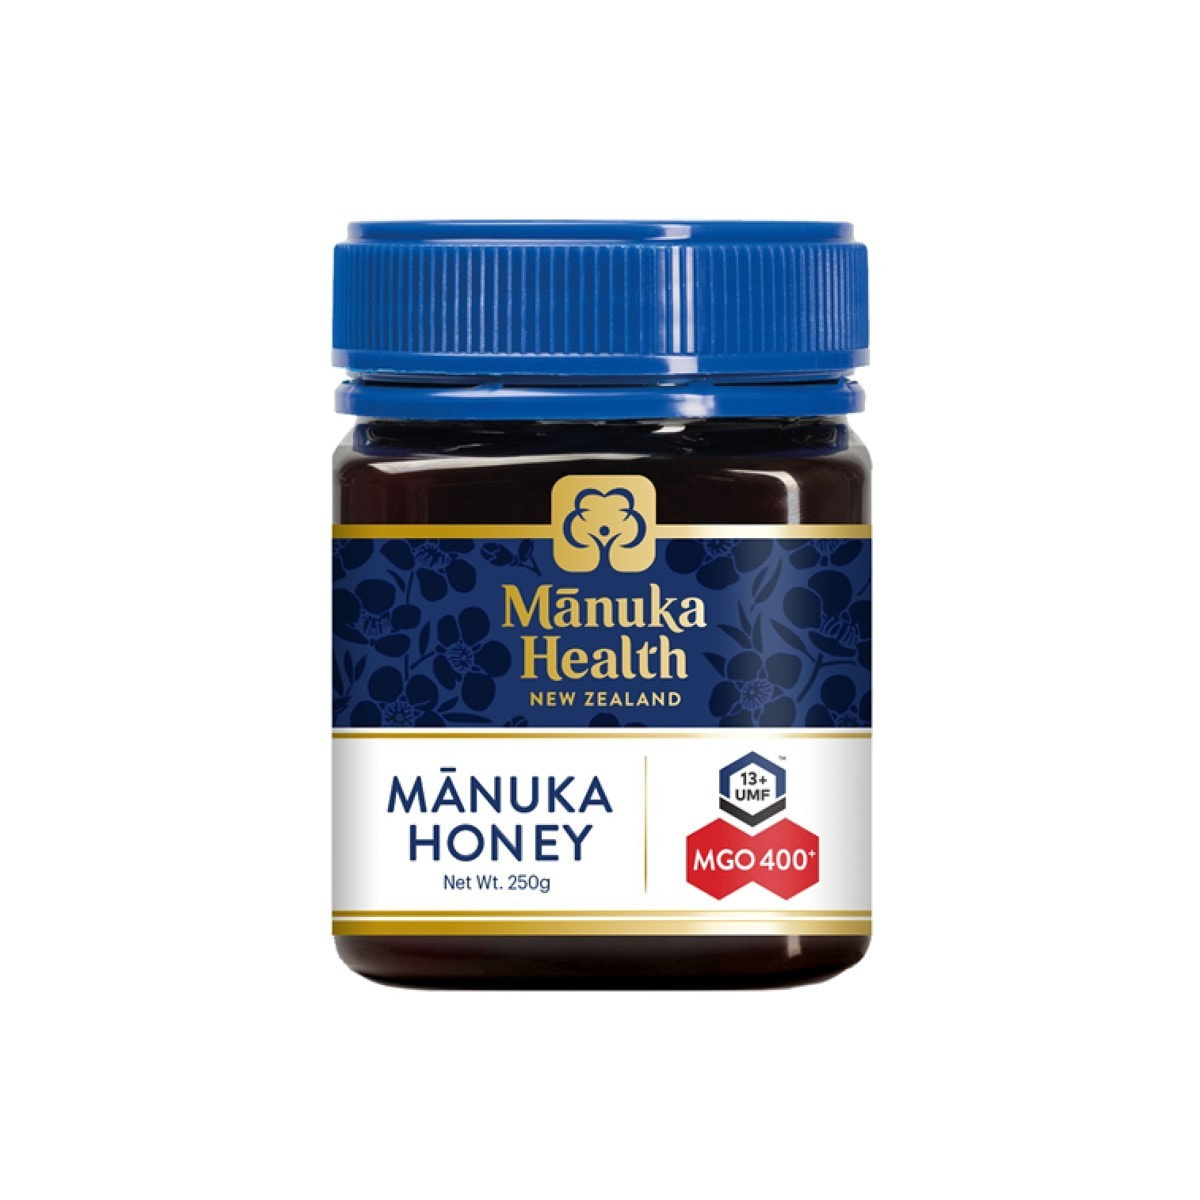 Manuka Health（マヌカヘルス）マヌカハニー MGO400/UMF13 250gの卸 